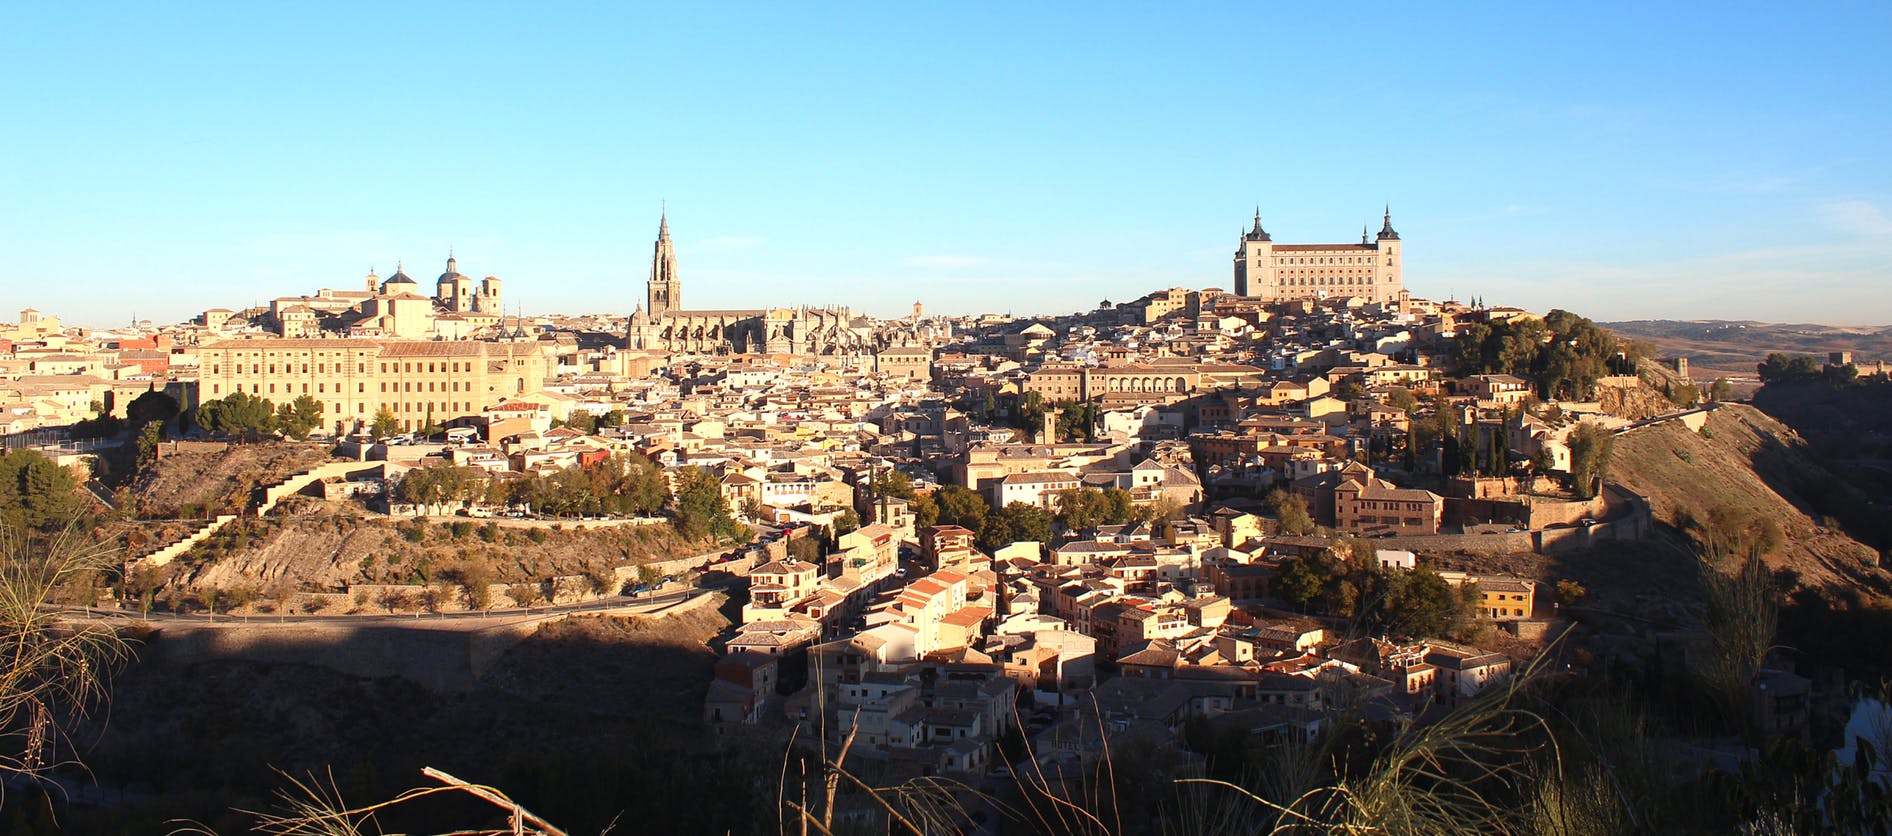 Visita guiada a Toledo saindo de Madrid com visita a uma vinícola local